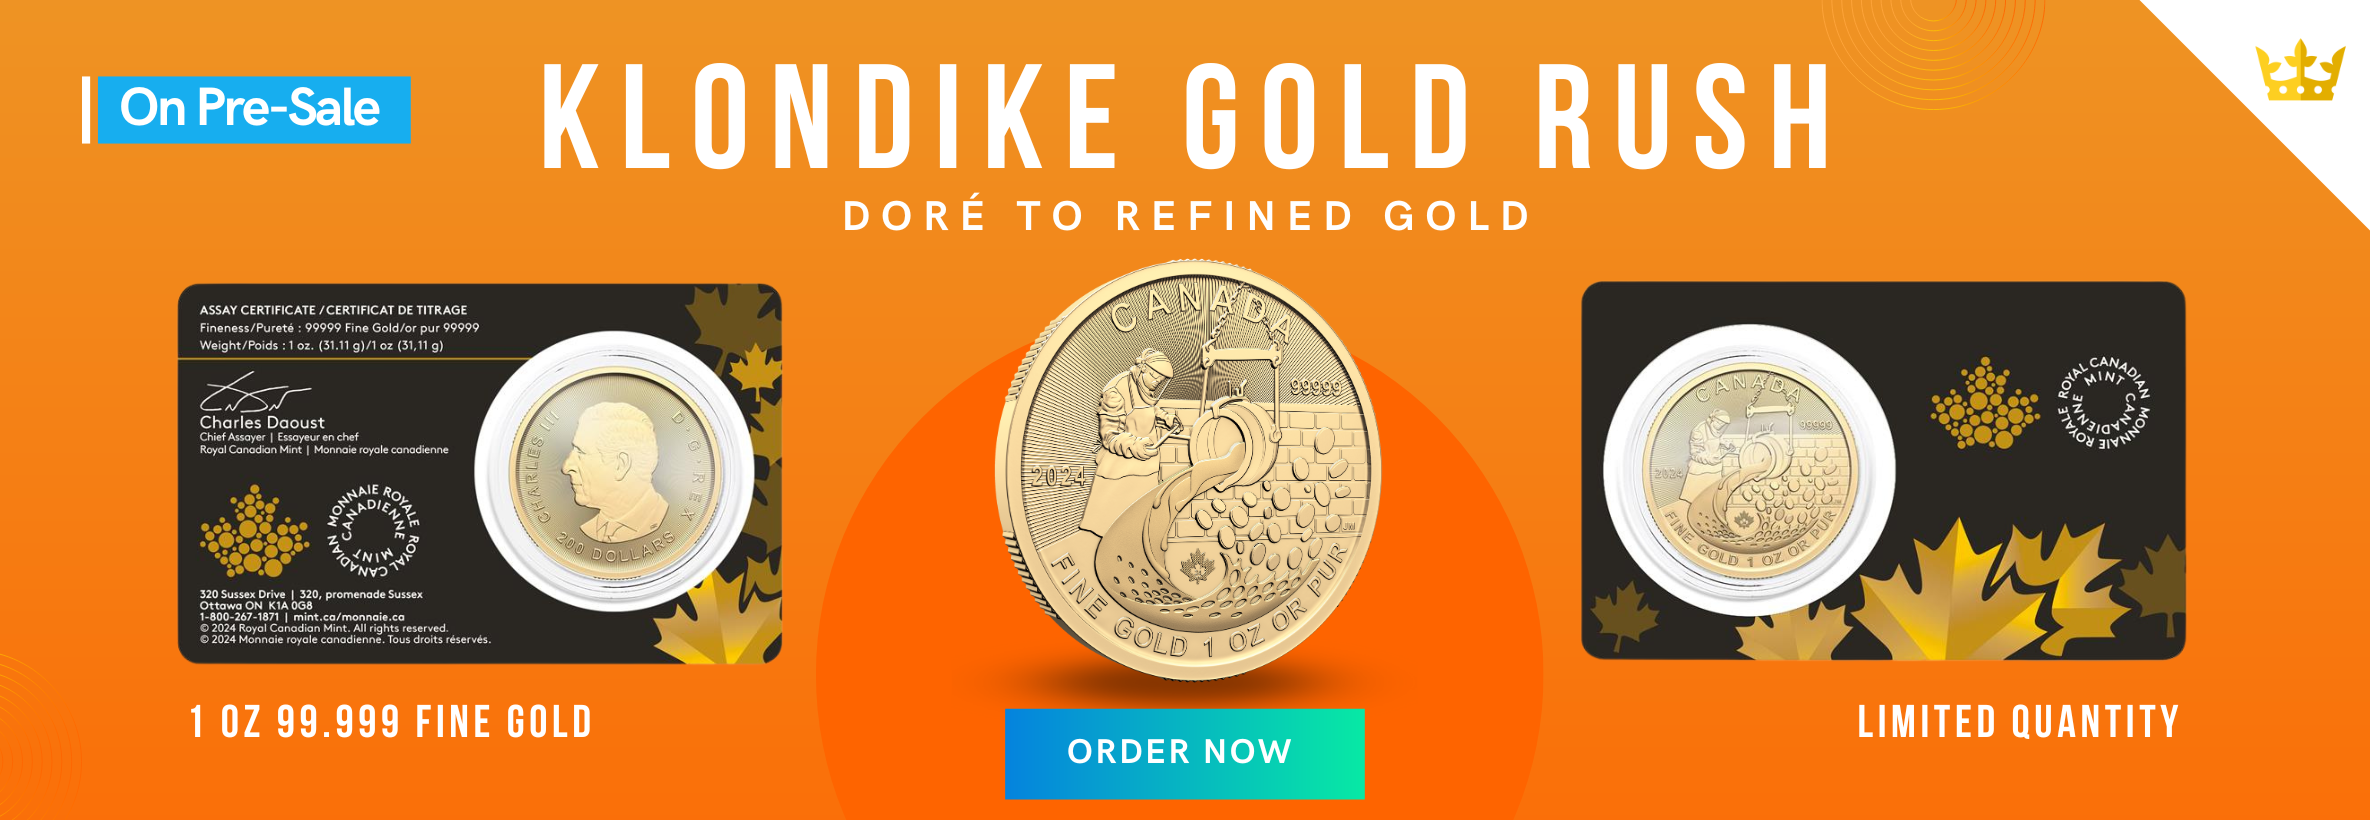 Klondike Gold Rush 1 oz Gold Coin